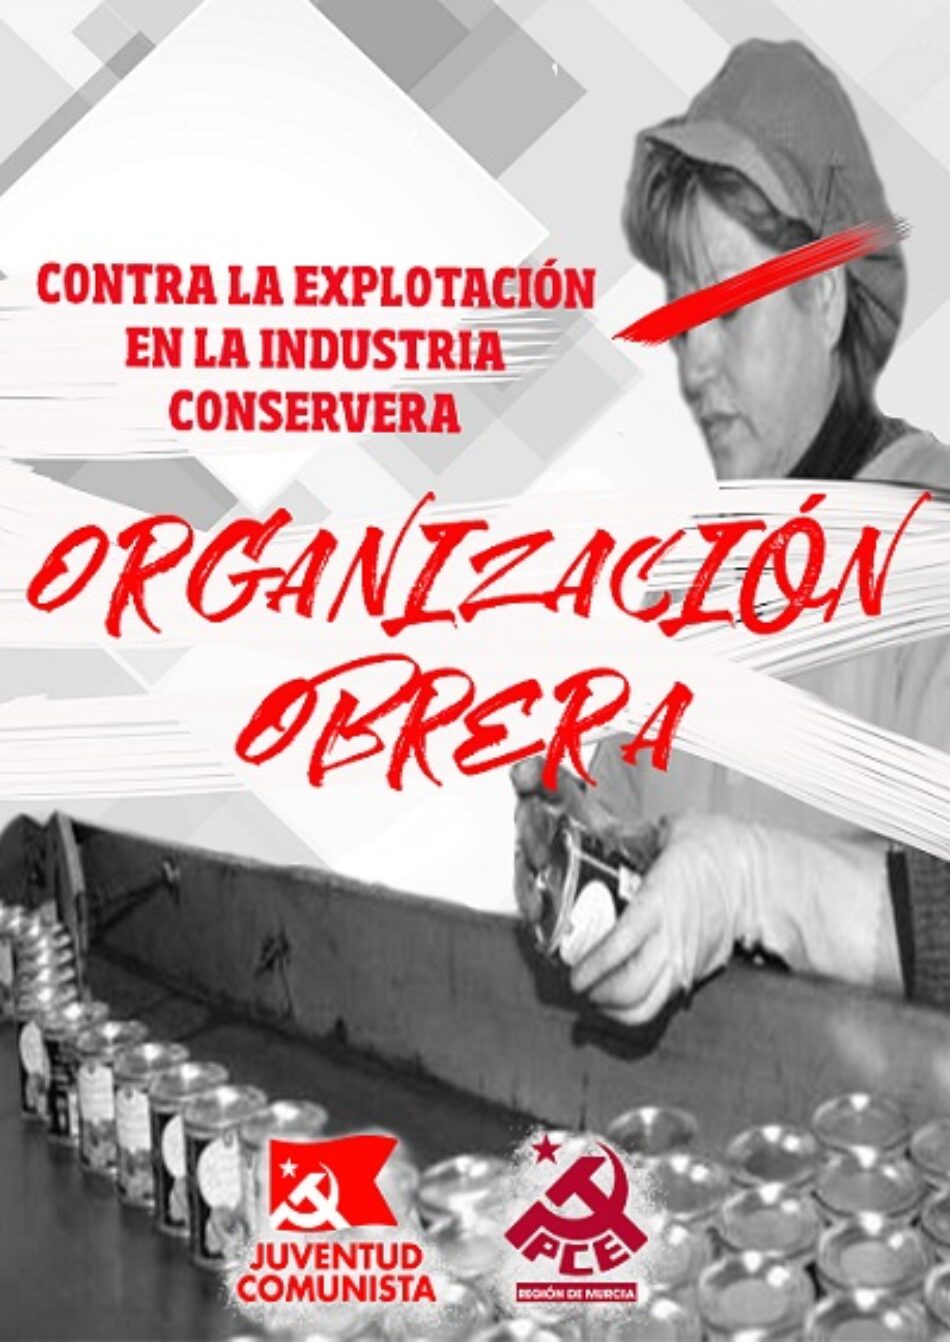 «Contra la explotación en la industria conservera, organización obrera»